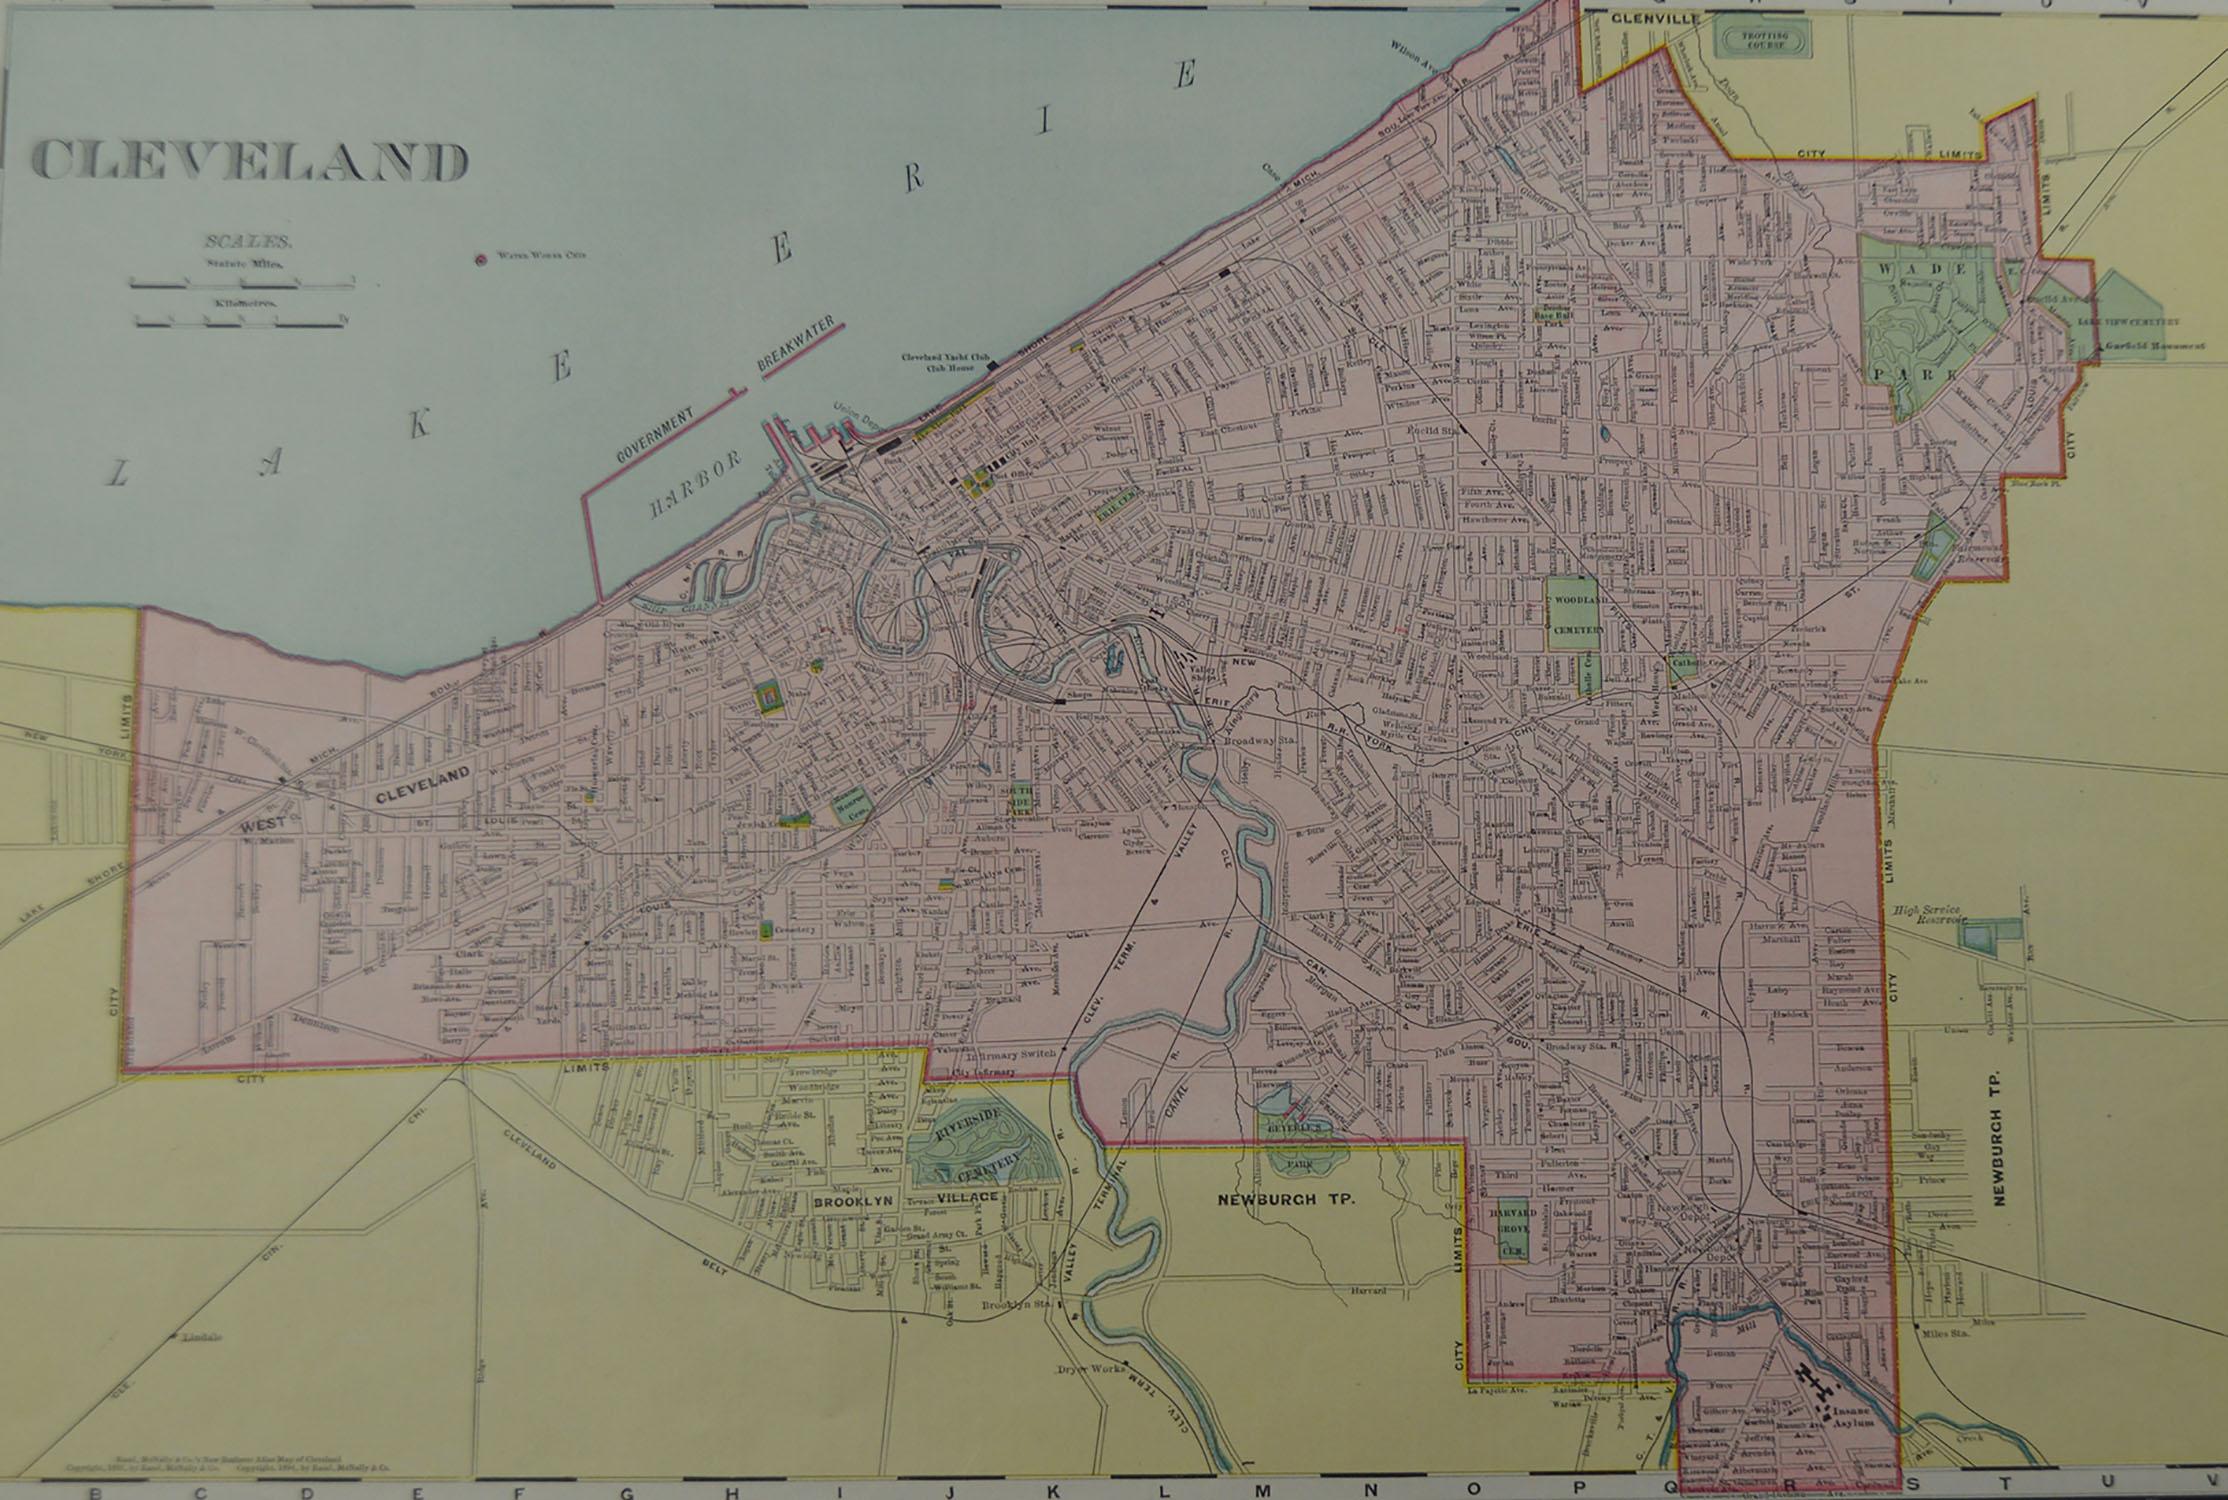 American Original Antique City Plan of Cleveland, Ohio, USA, circa 1900